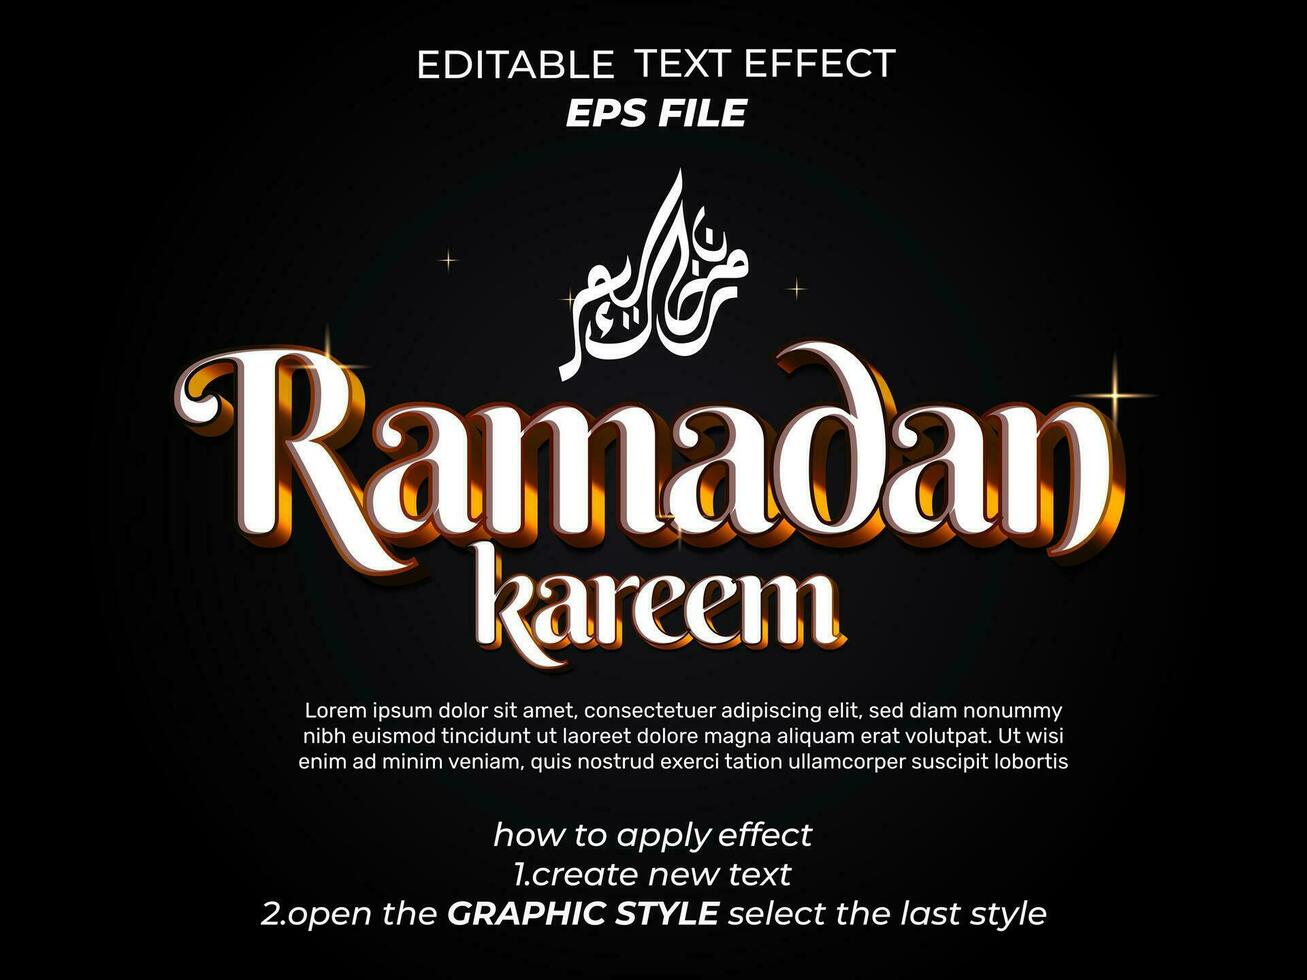 Ramadan texte effet, typographie, 3d texte. vecteur modèle